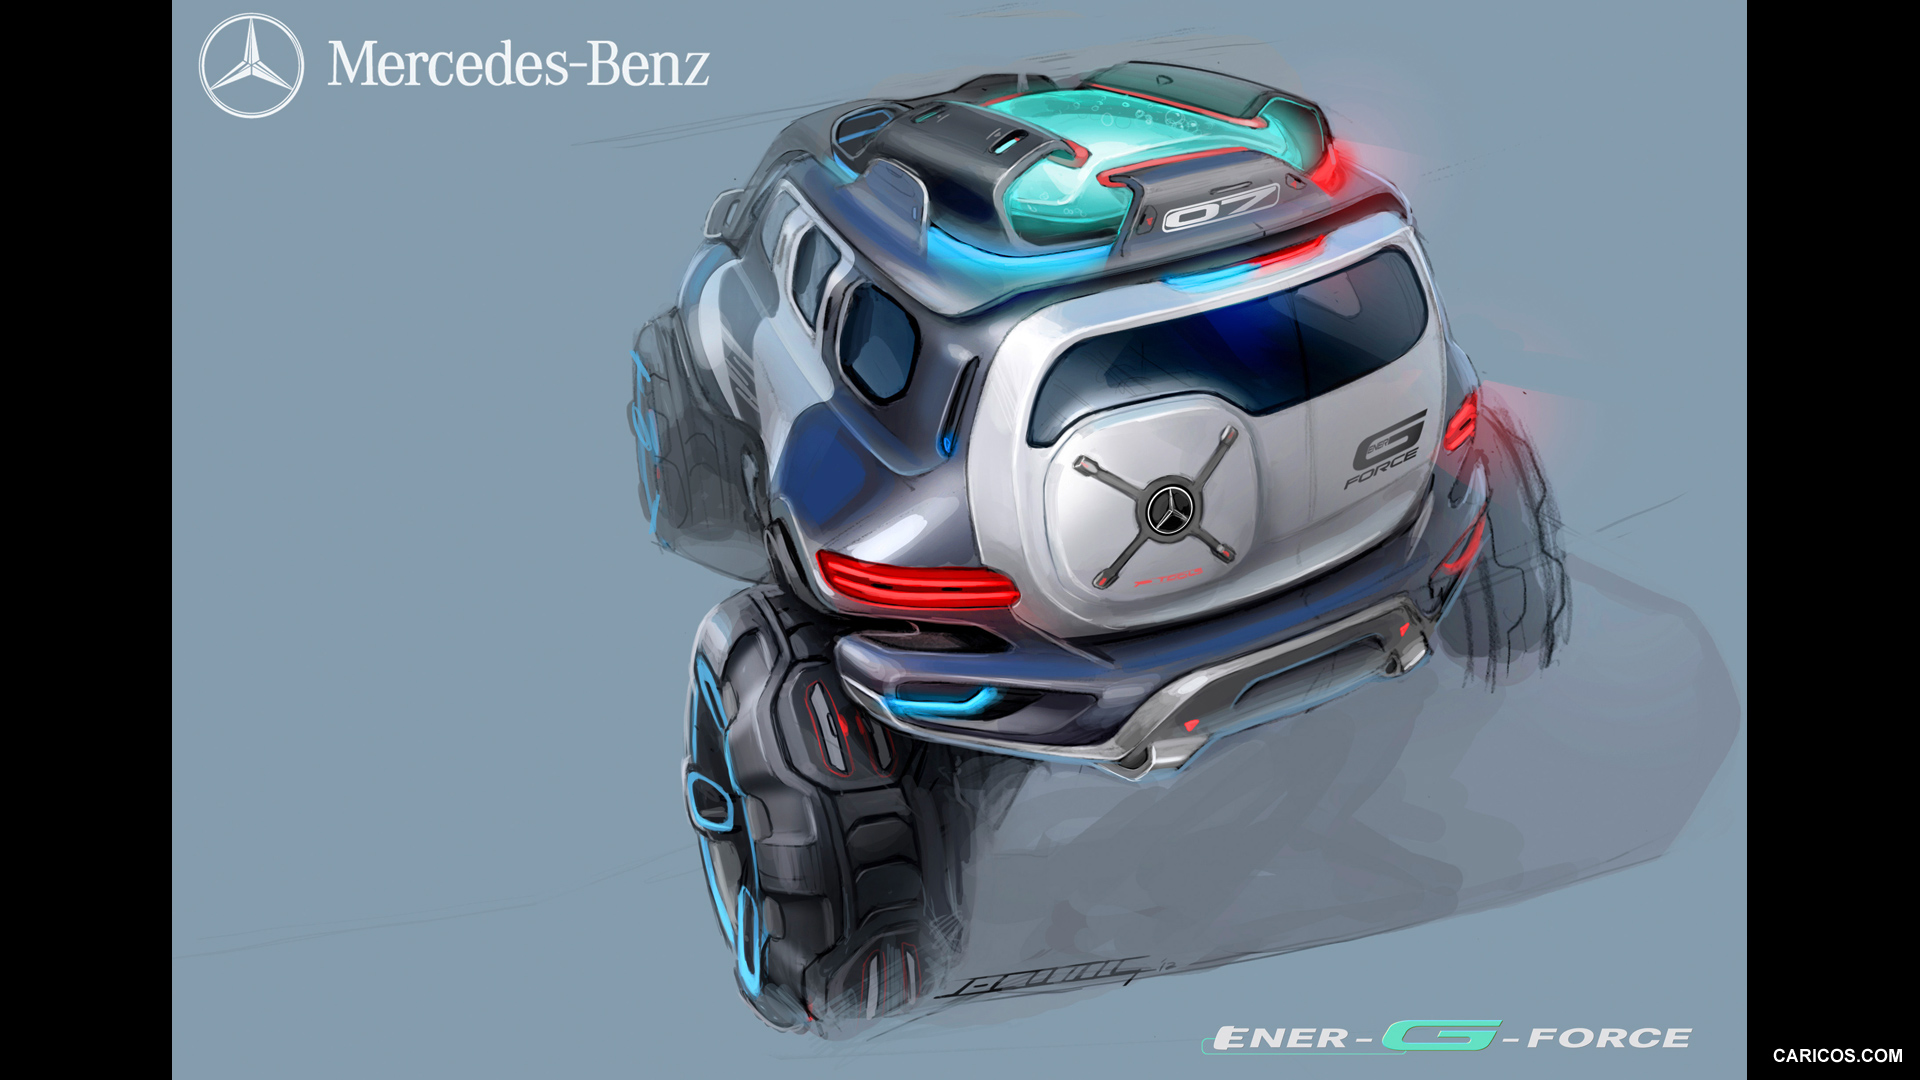 Mercedes-Benz Ener-G-Force Concept (2012)  - Design Sketch, #20 of 21